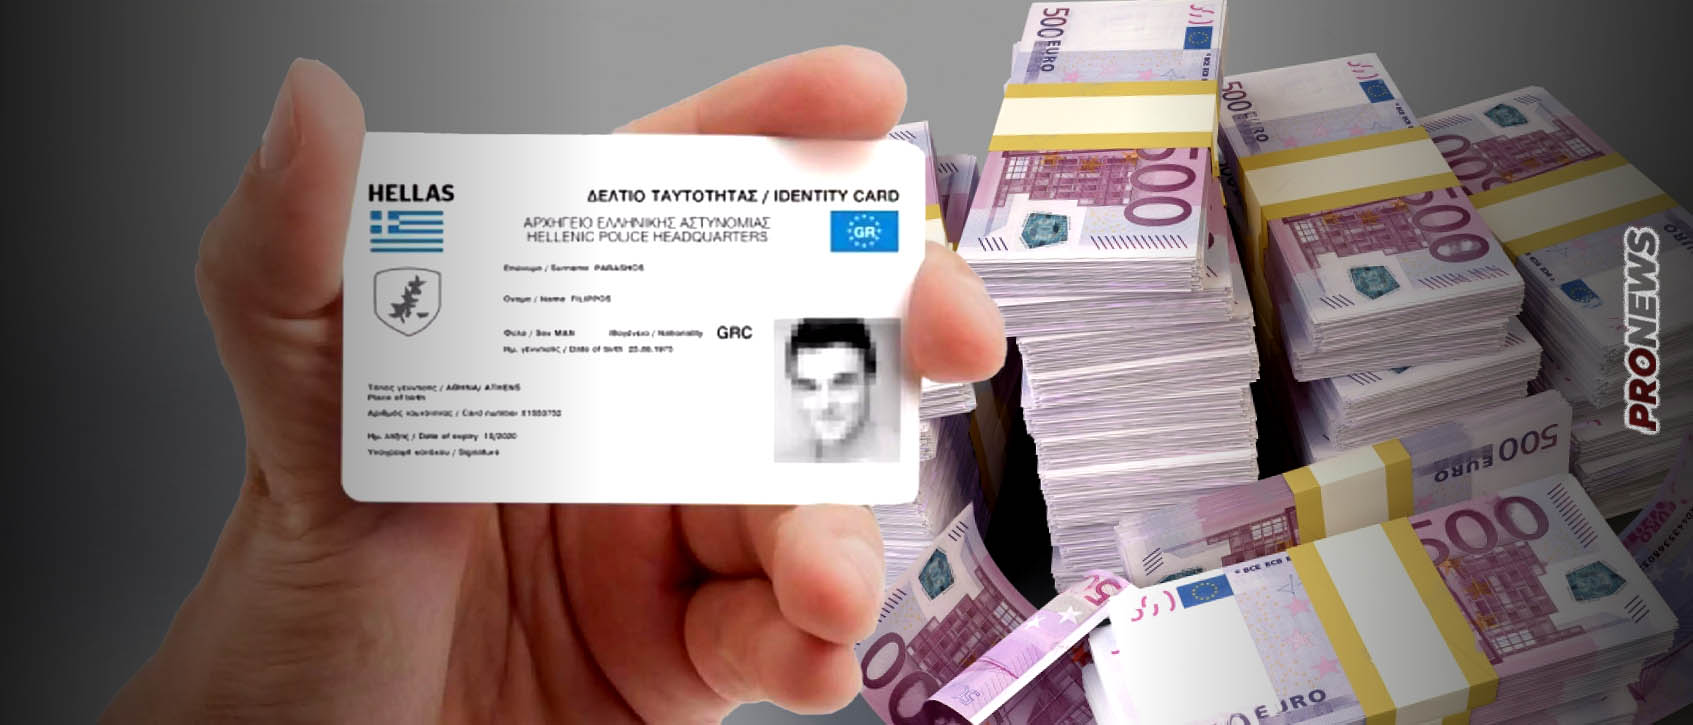 Με απευθείας ανάθεση αξίας 100 εκατ. ευρώ θα εκδοθούν οι νέες ψηφιακές ταυτότητες – Είναι πολλά τα λεφτά…